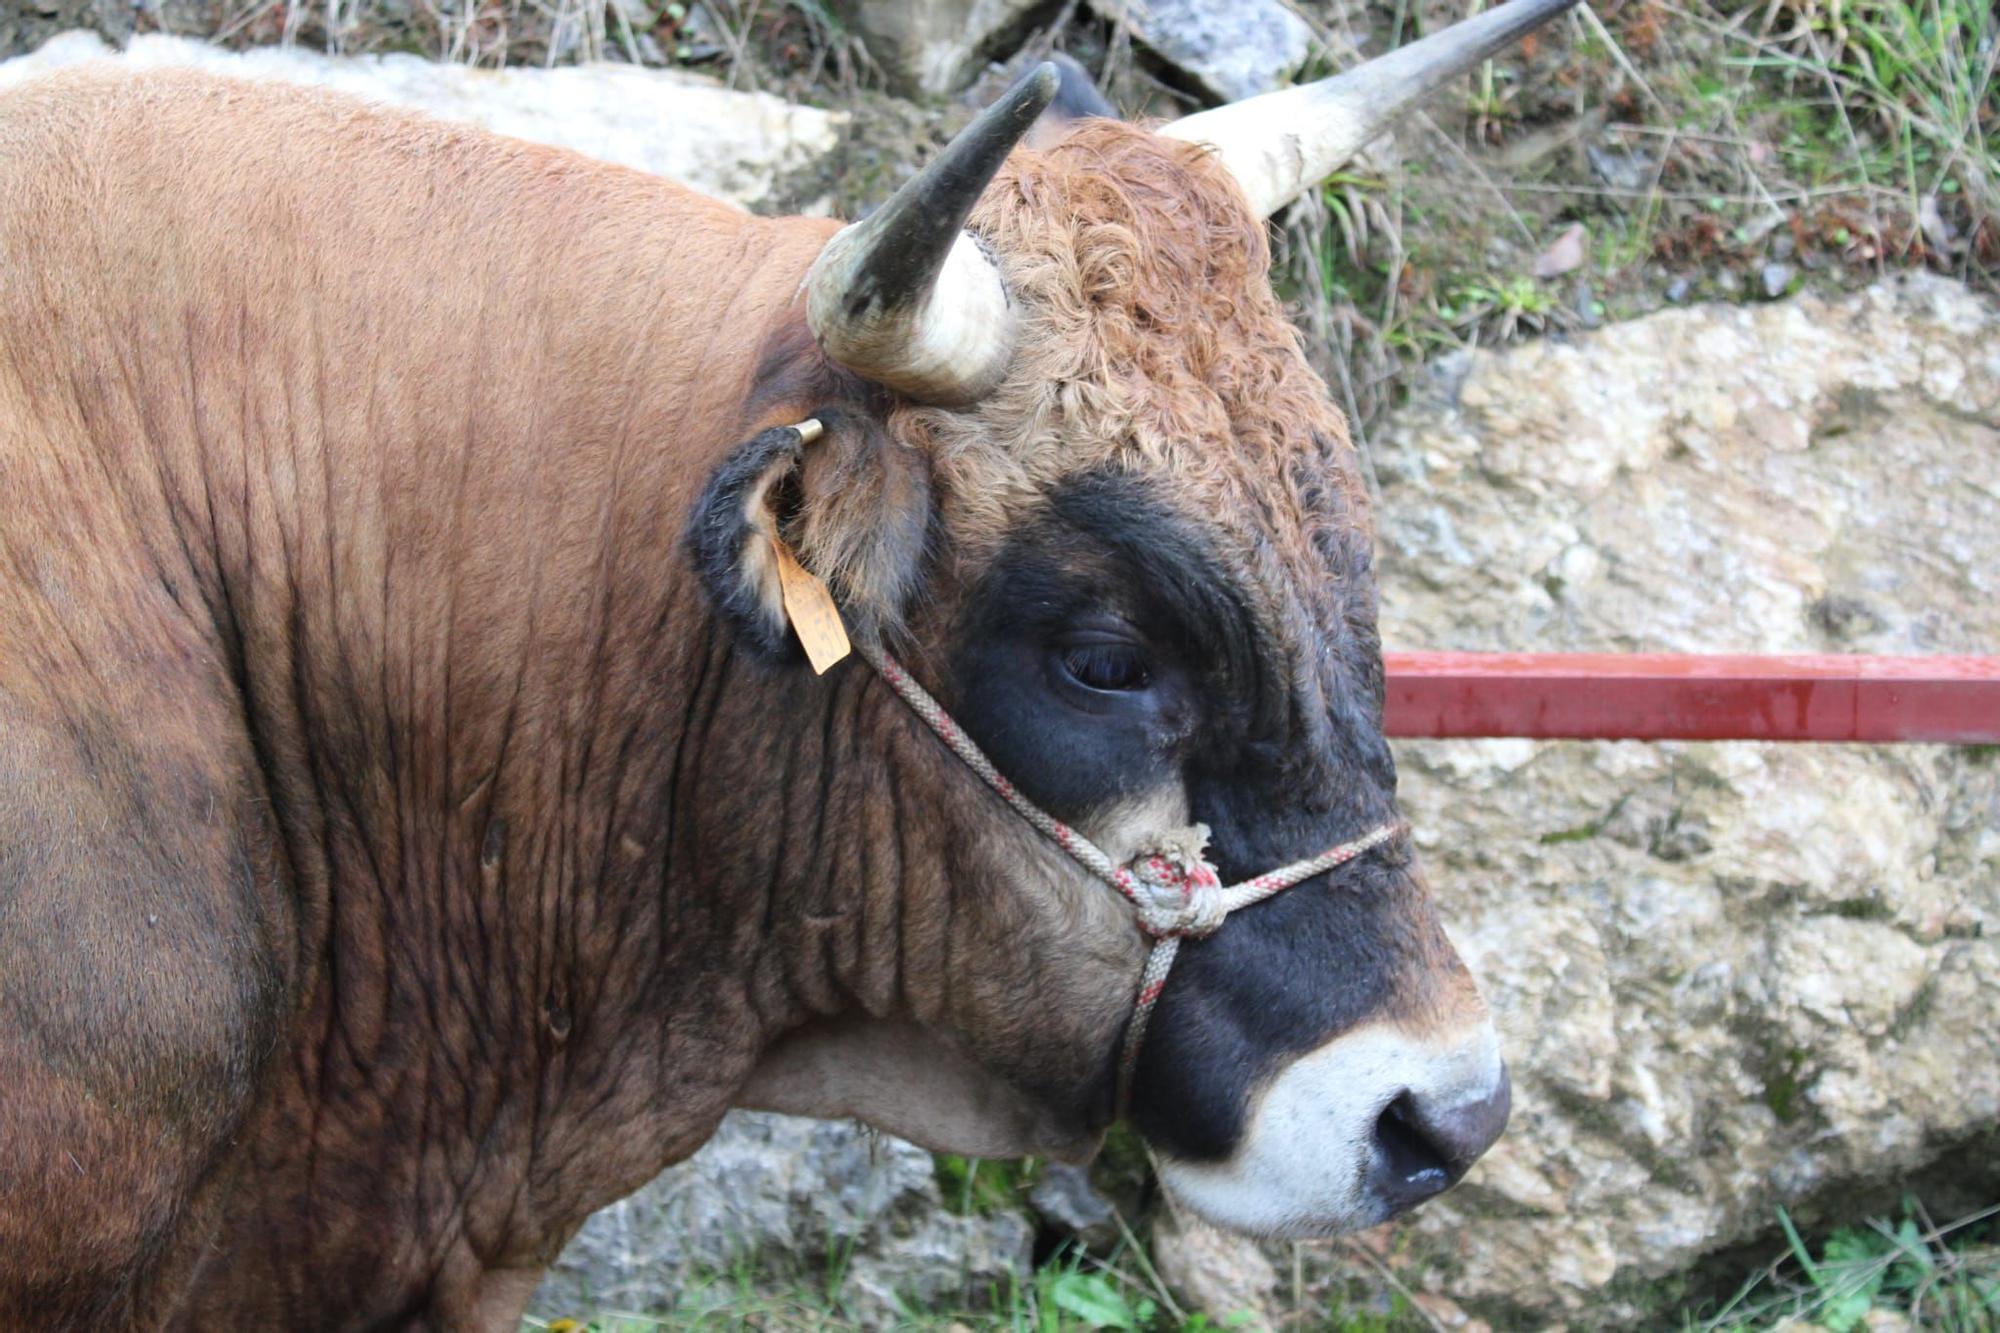 La feria de ganado de Sobrescobio vuelve con 536 animales tras dos años de parón por la pandemia